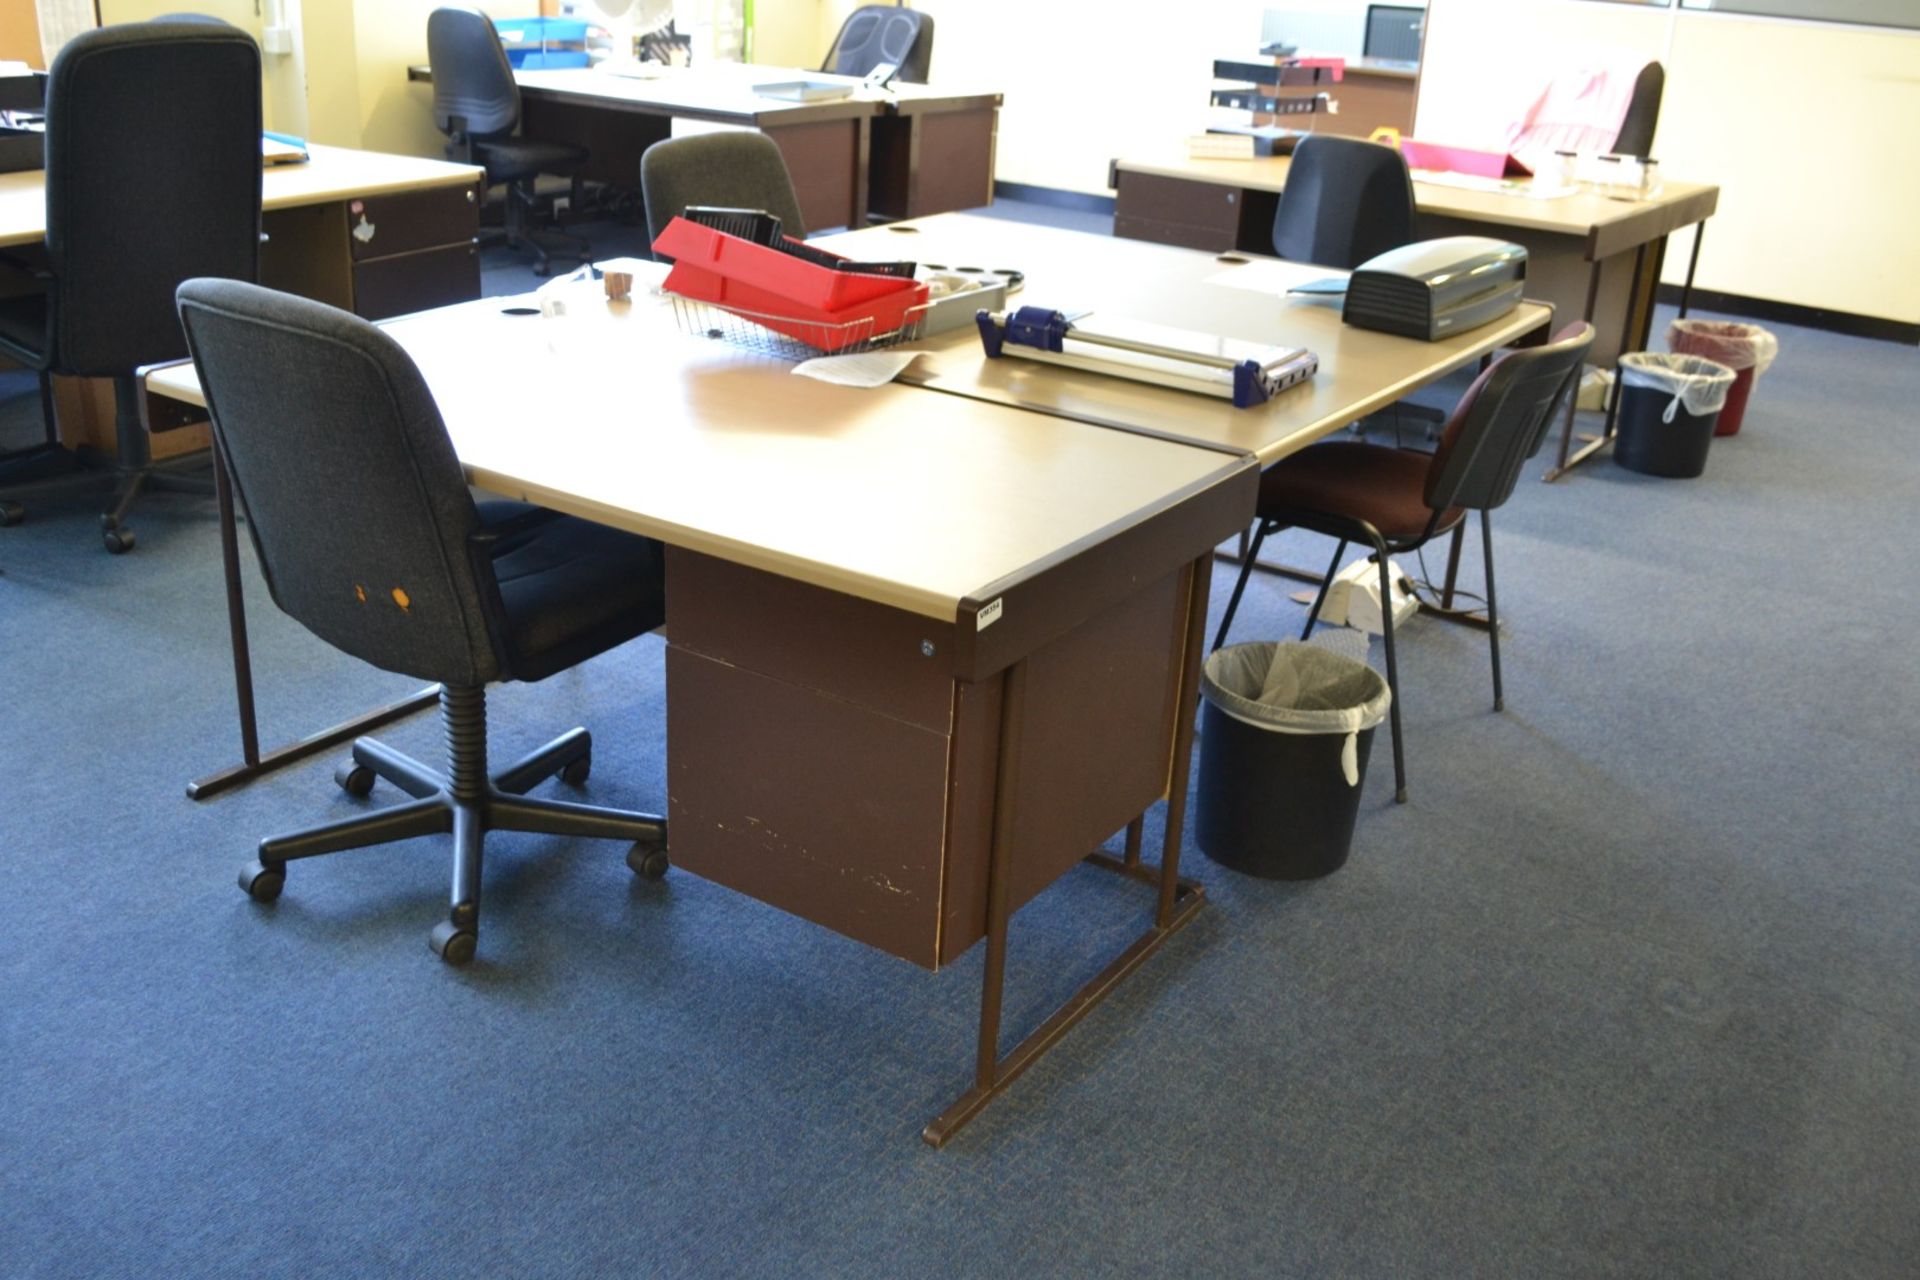 3 x Beige Rectangular Office Desks - Ref: VM354 - CL409 - Location WF16